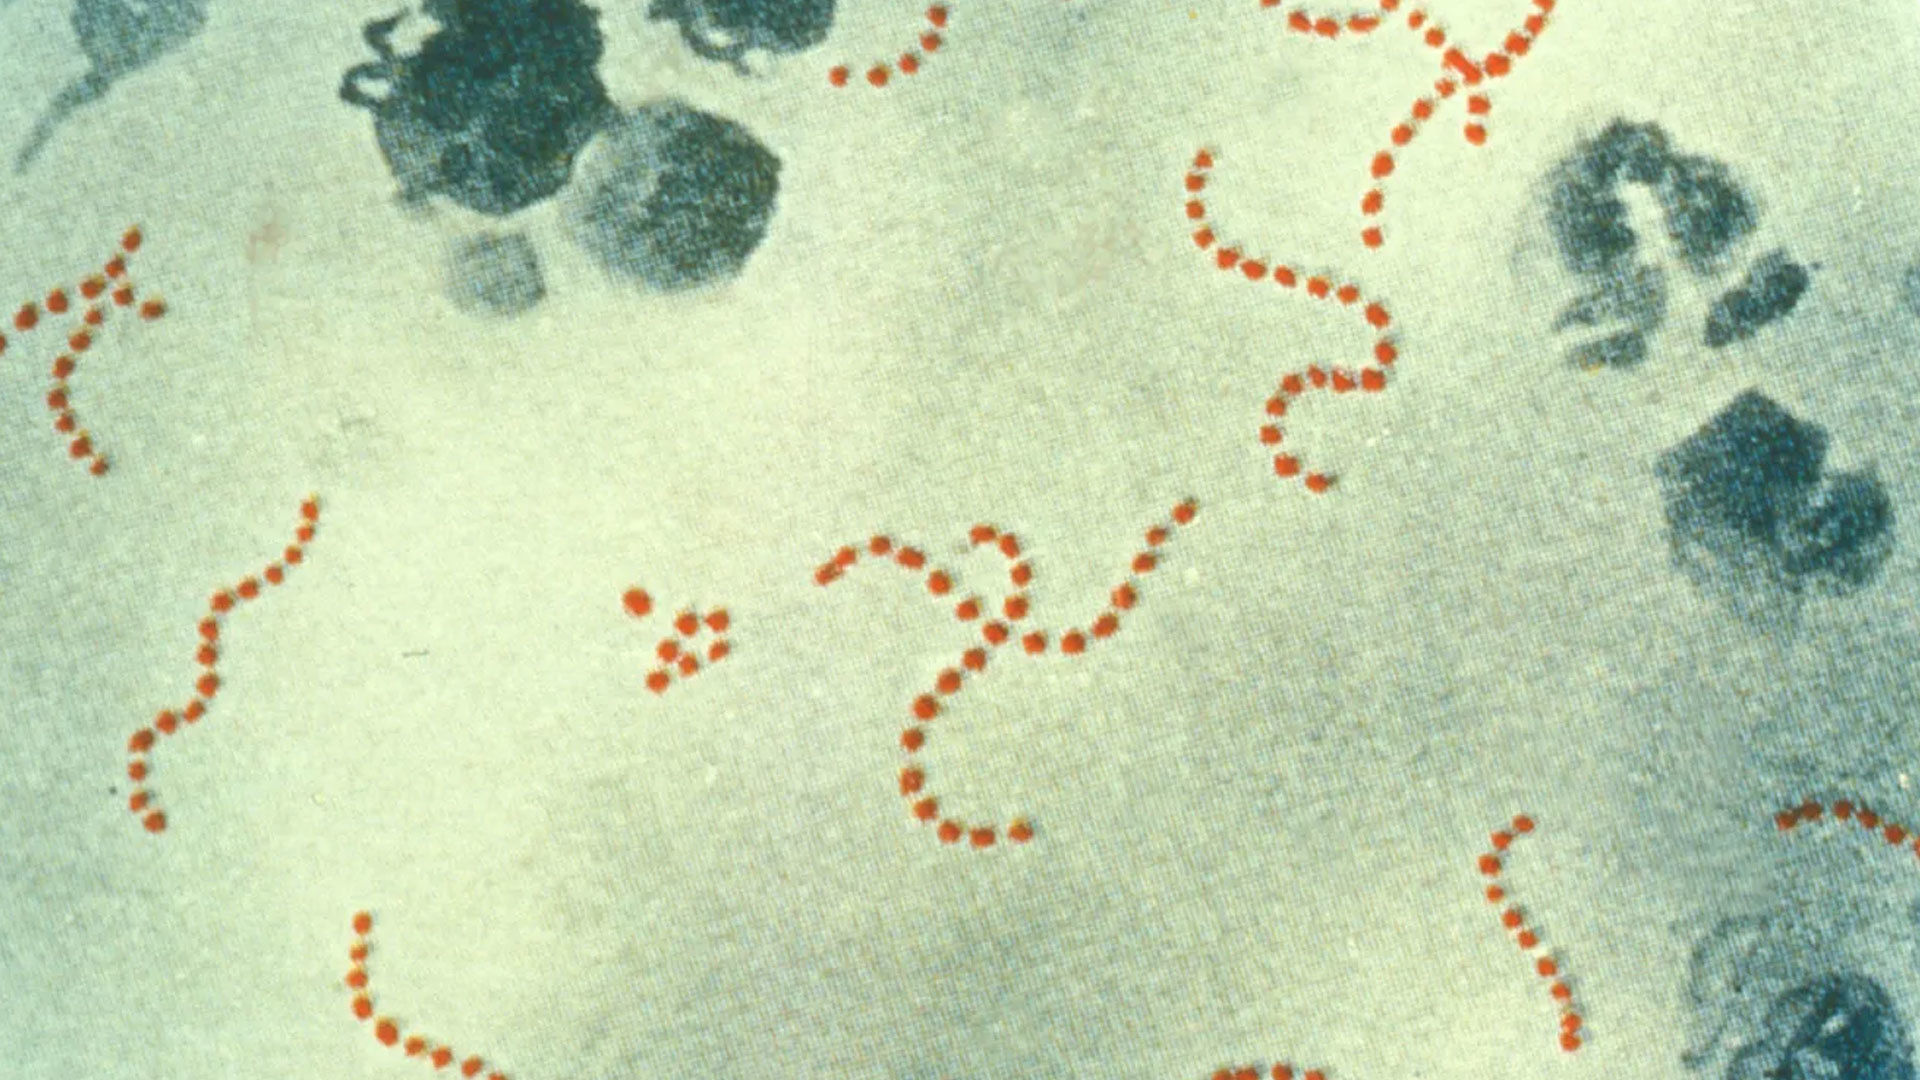 Japão registra um número recorde de infecções letais por bactéria "carnívora" letal